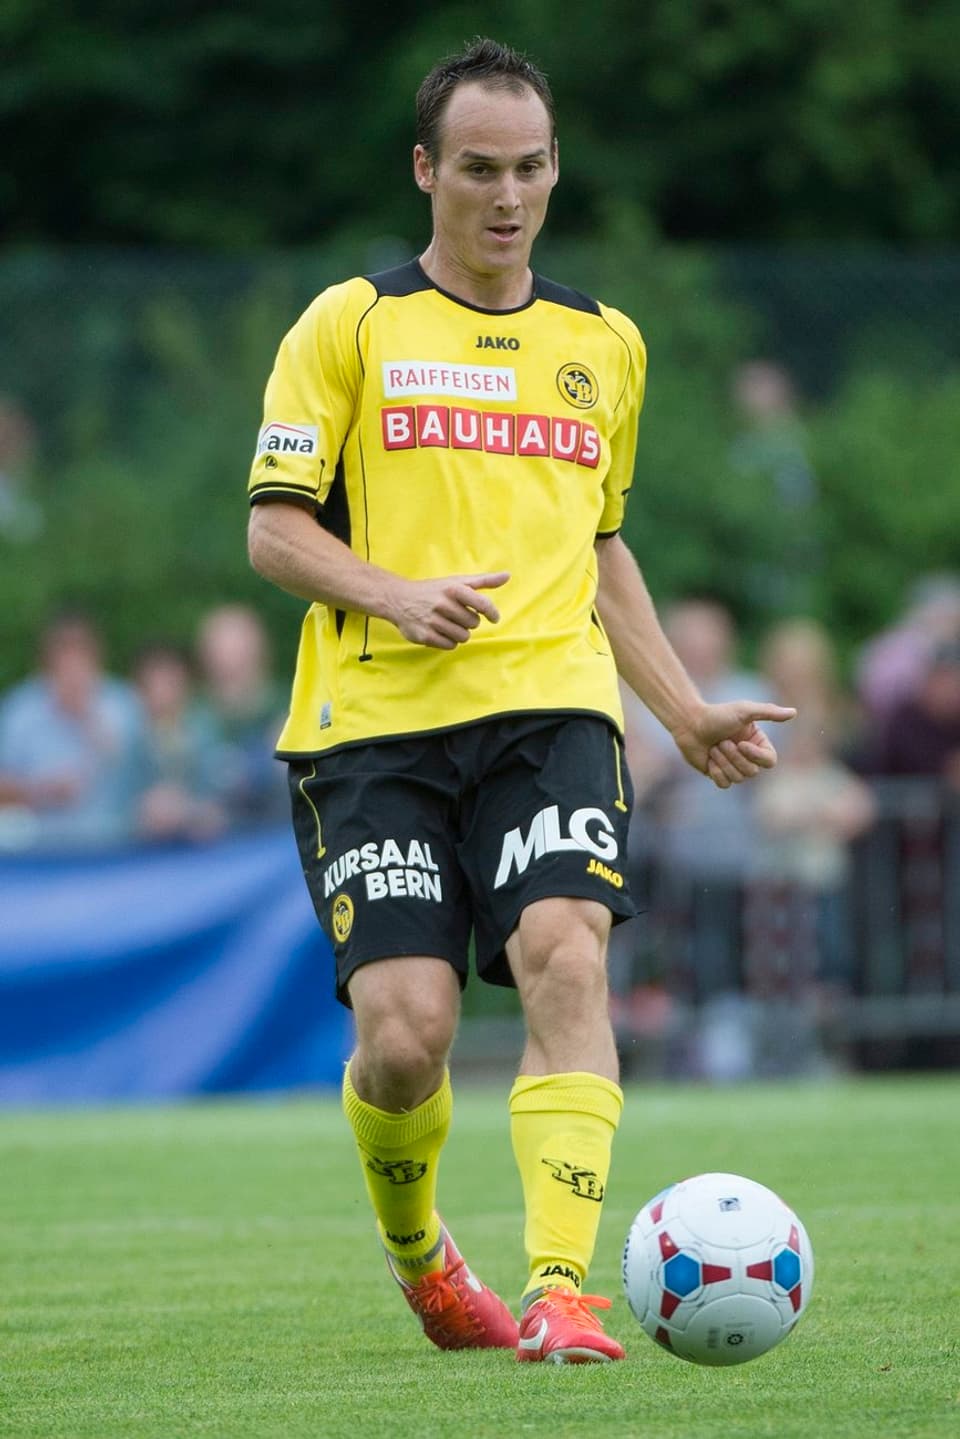 Der Abwehrspieler wechselt von Serie-A-Absteiger Palermo zu den Young Boys. Vor seinem Ausland-Engagement spielte der Nationalspieler in der Schweiz bei Xamax und dem FCZ. 